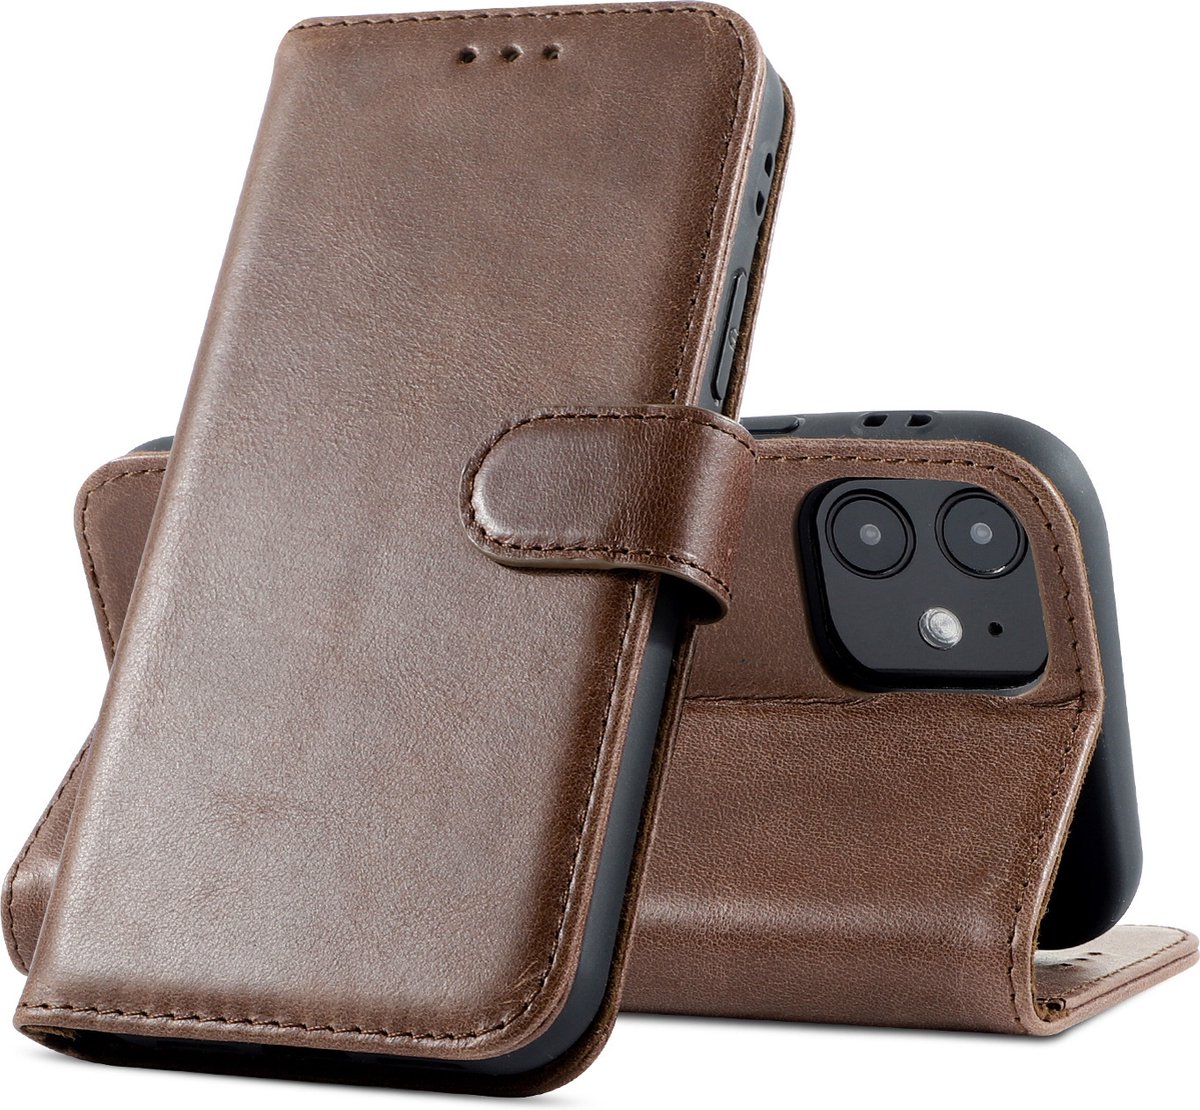 Hoyde - luxe echt lederen wallet hoes - iPhone 12 Mini - Bruin